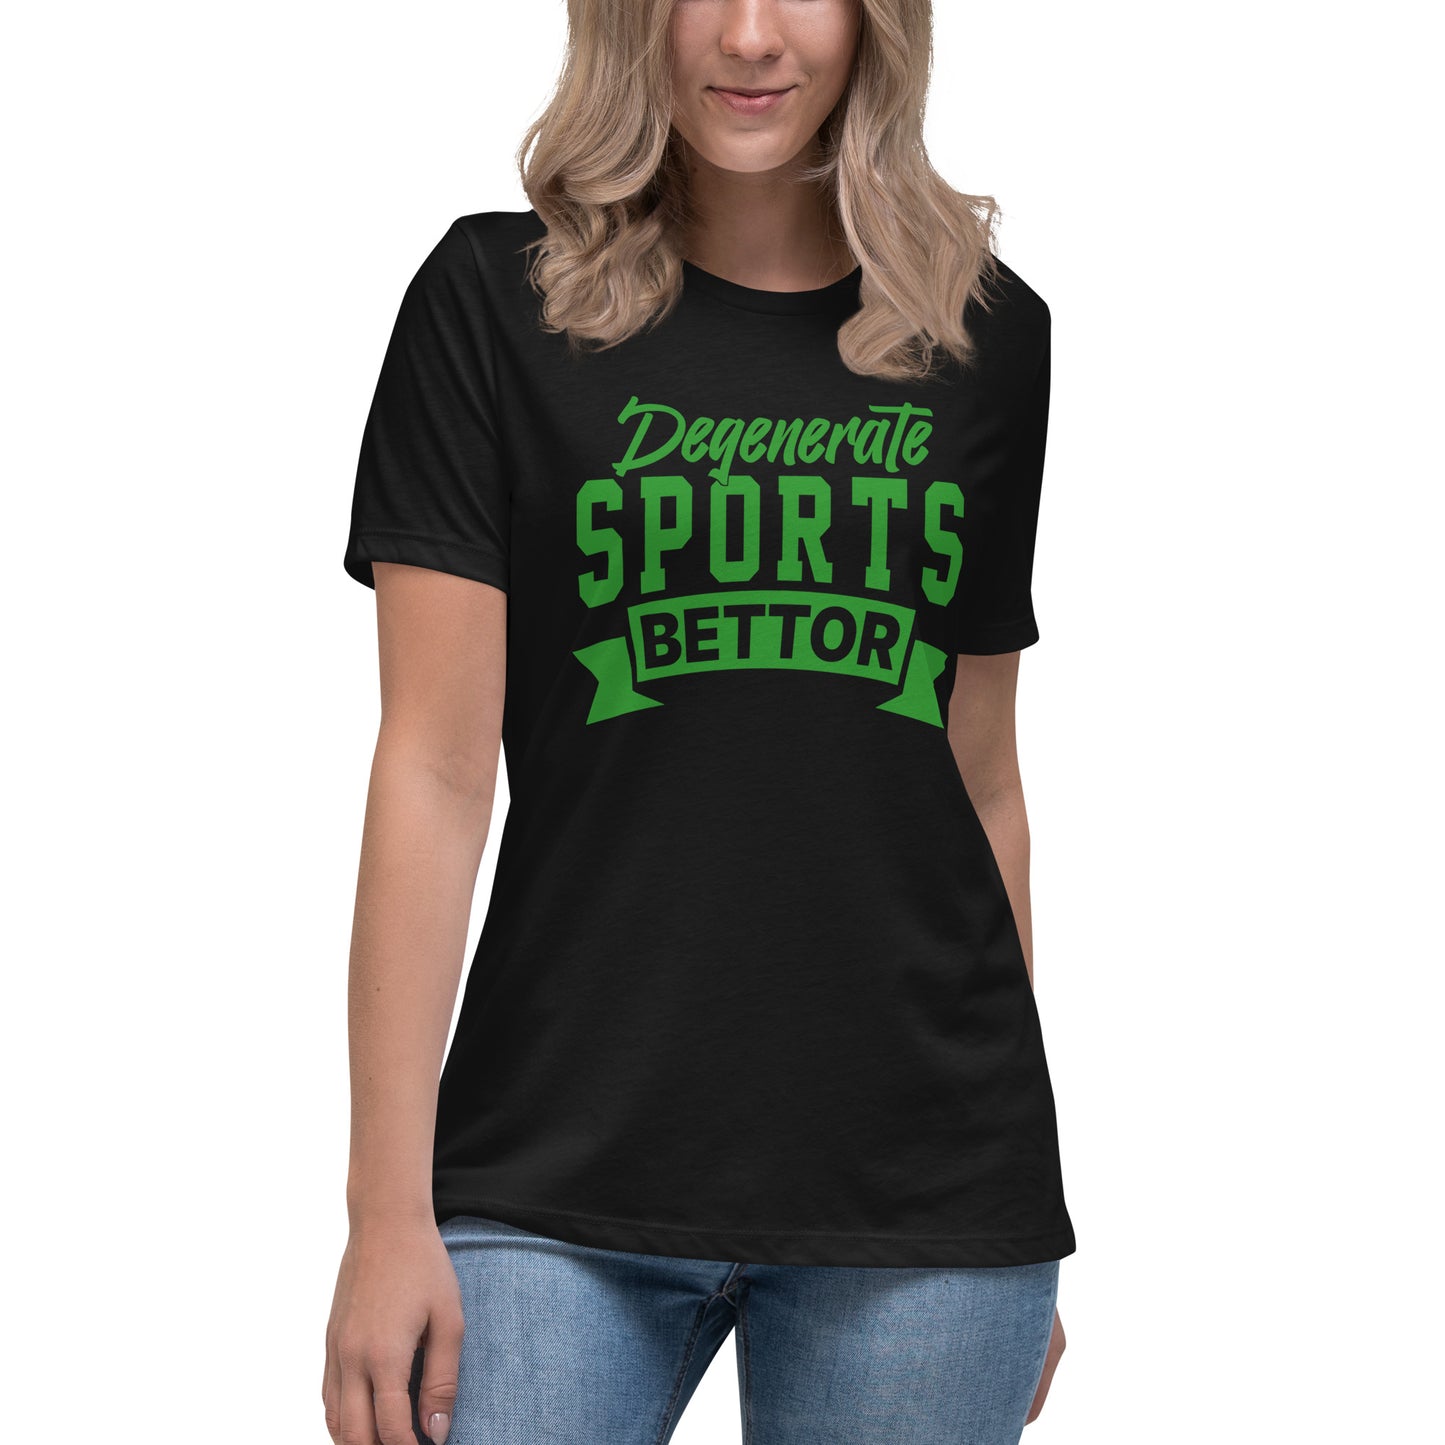 Degenerate Sports Bettor Women's Relaxed T-Shirt